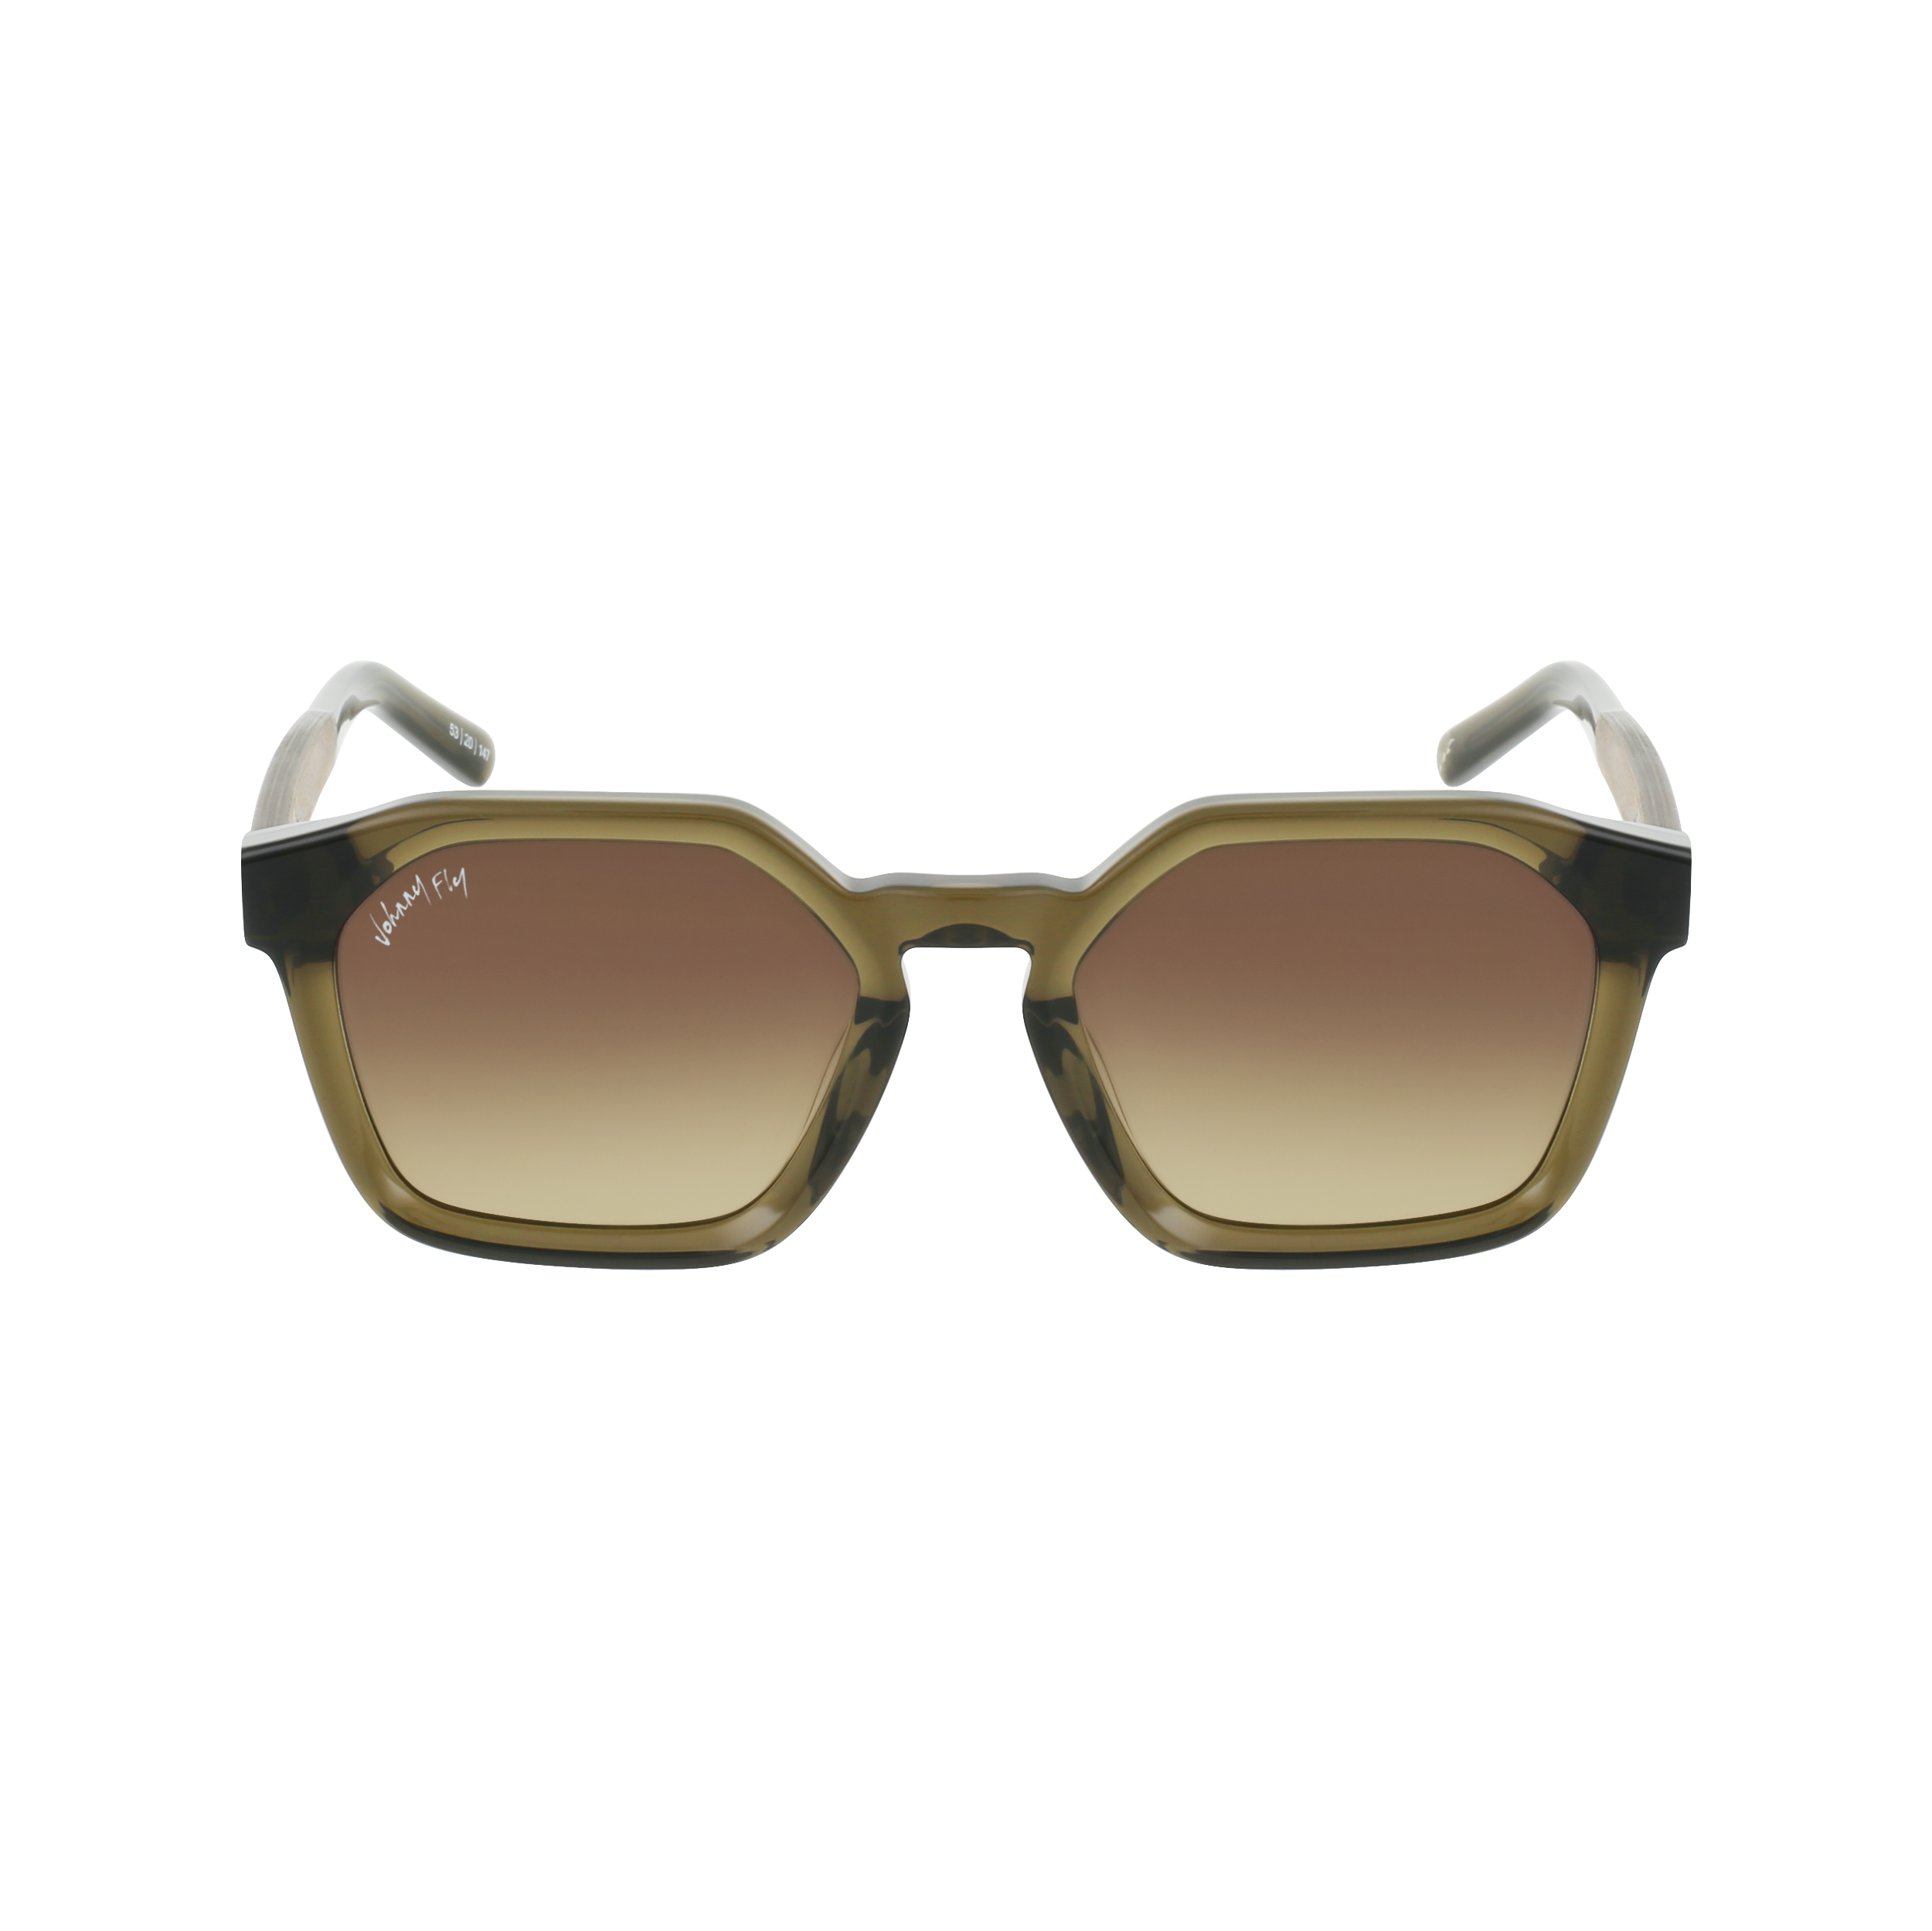 FORTUNE Sunglasses Frame - Olive- Johnny Fly | FOR-OLV-LBGR | | 